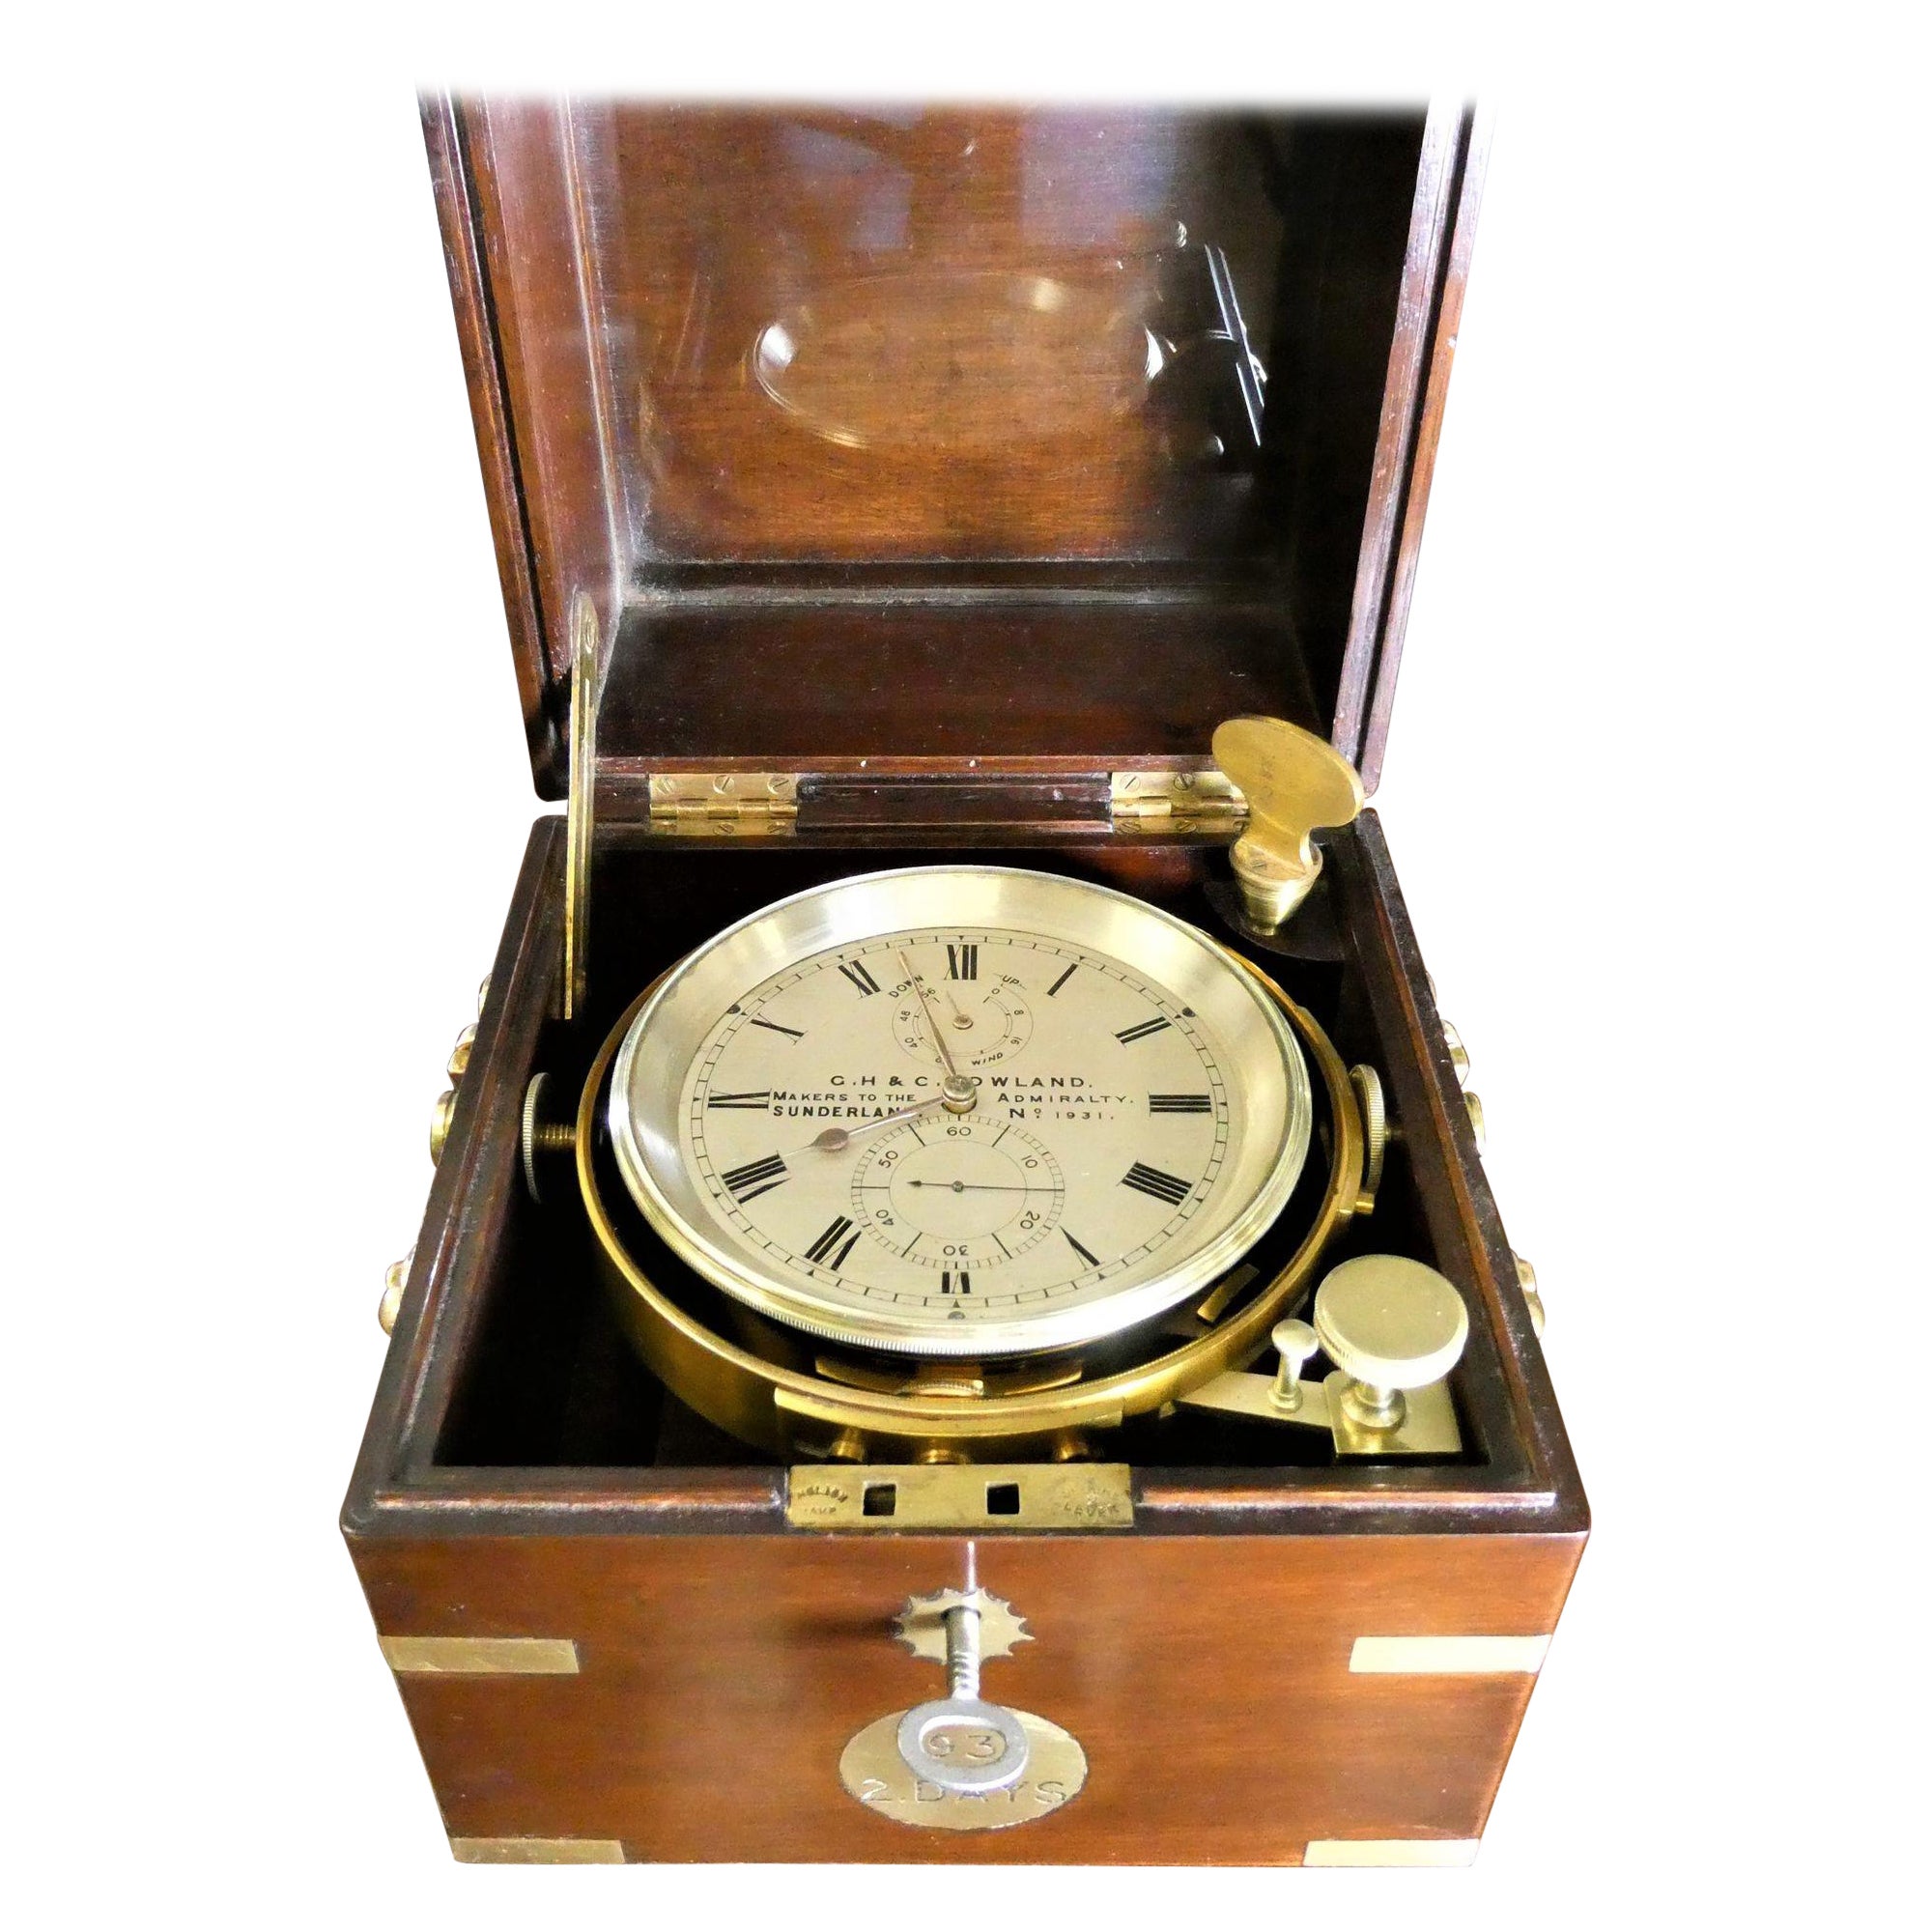 Chronomètre de la marine deux jours, G.H & C Gowland, Sunderland n°1931 en vente